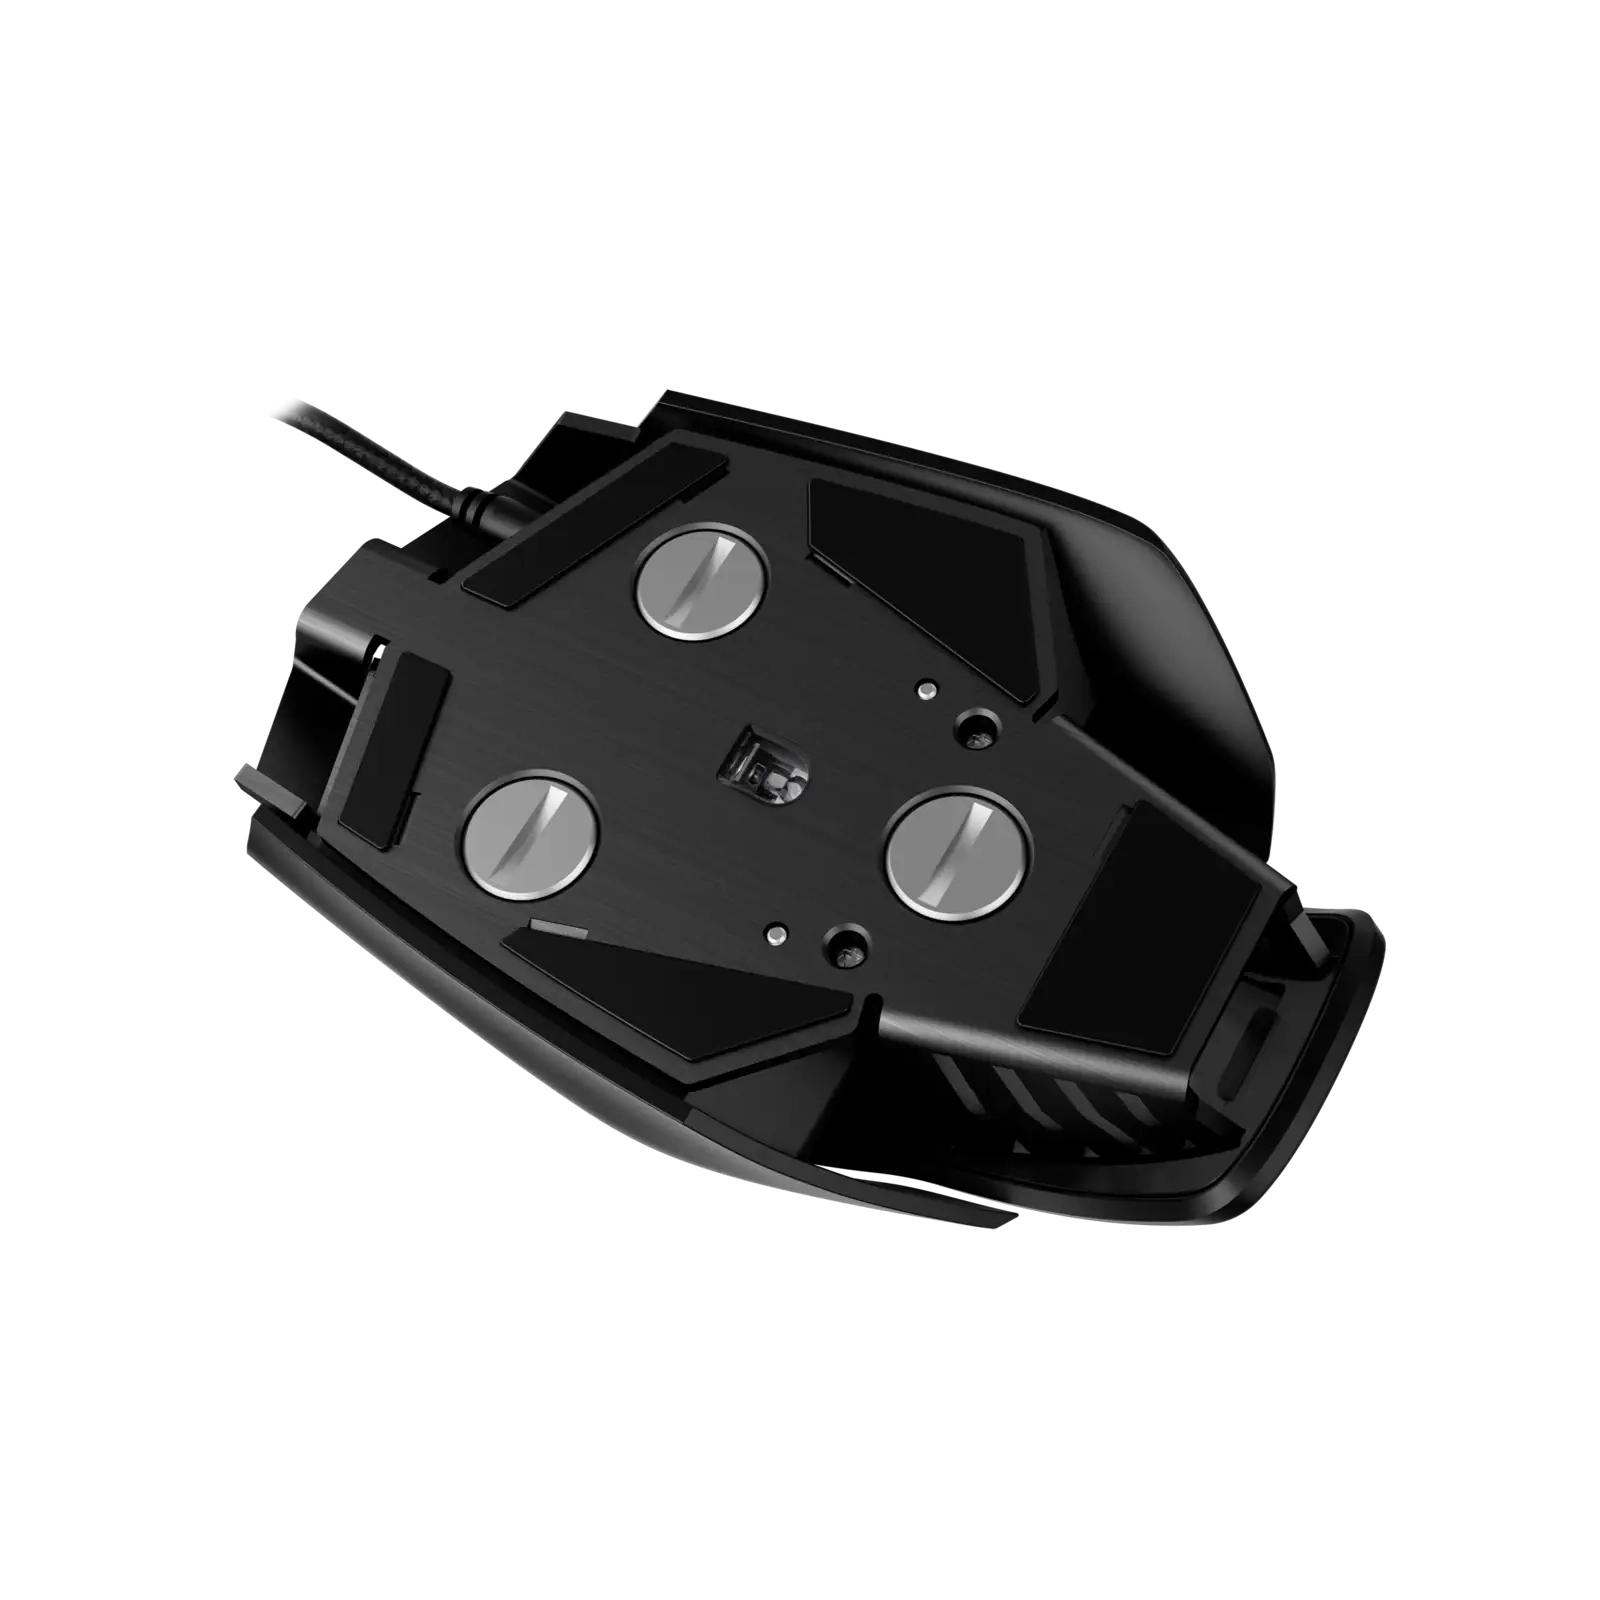 Мышка Corsair M65 Pro RGB USB Black (CH-9300011-EU) изображение 5